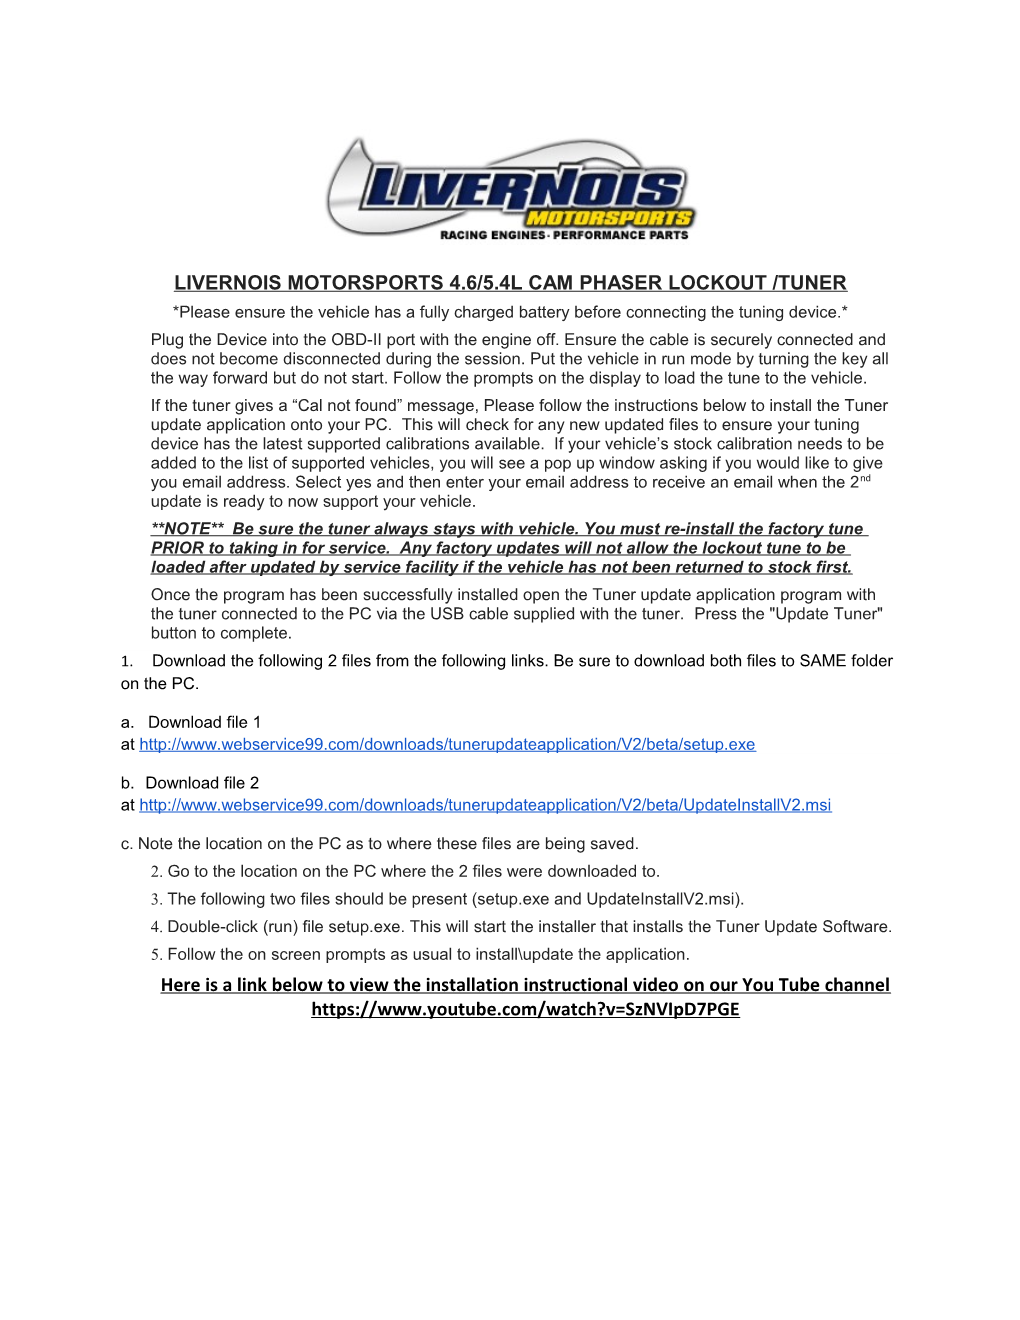 Livernois Motorsports 4.6/5.4L Cam Phaser Lockout /Tuner